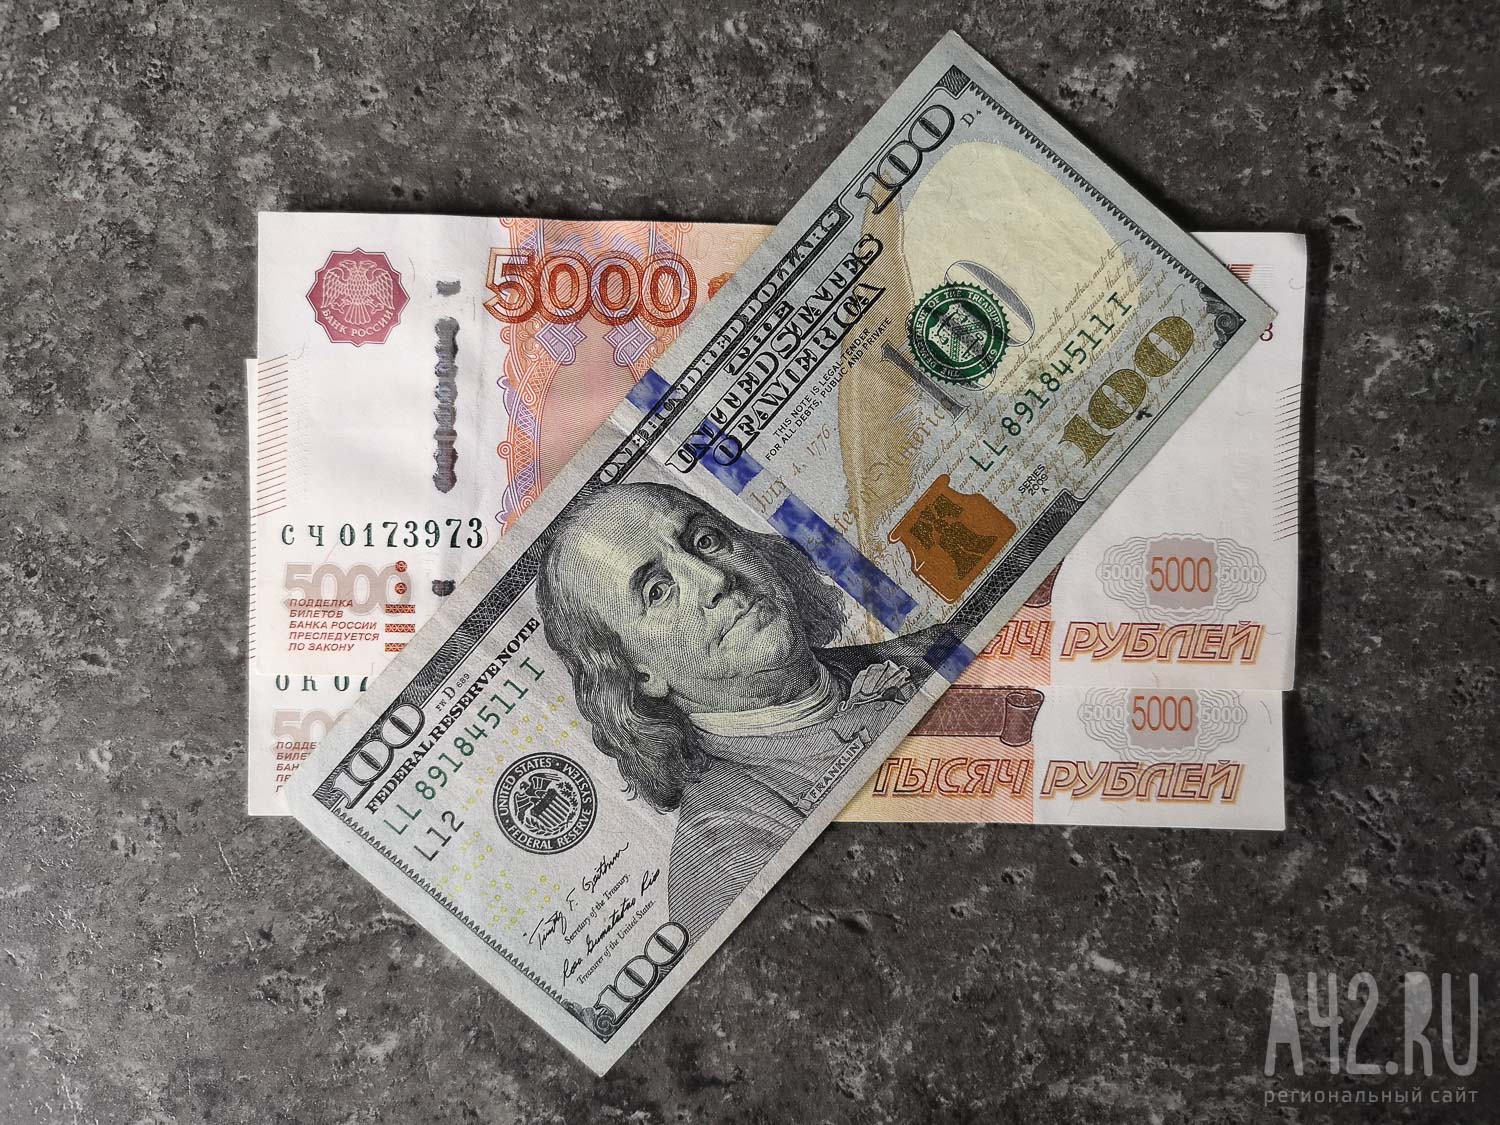 Из Кузбасса на счета 6 иностранных компаний незаконно перевели почти 5 млн рублей в валюте